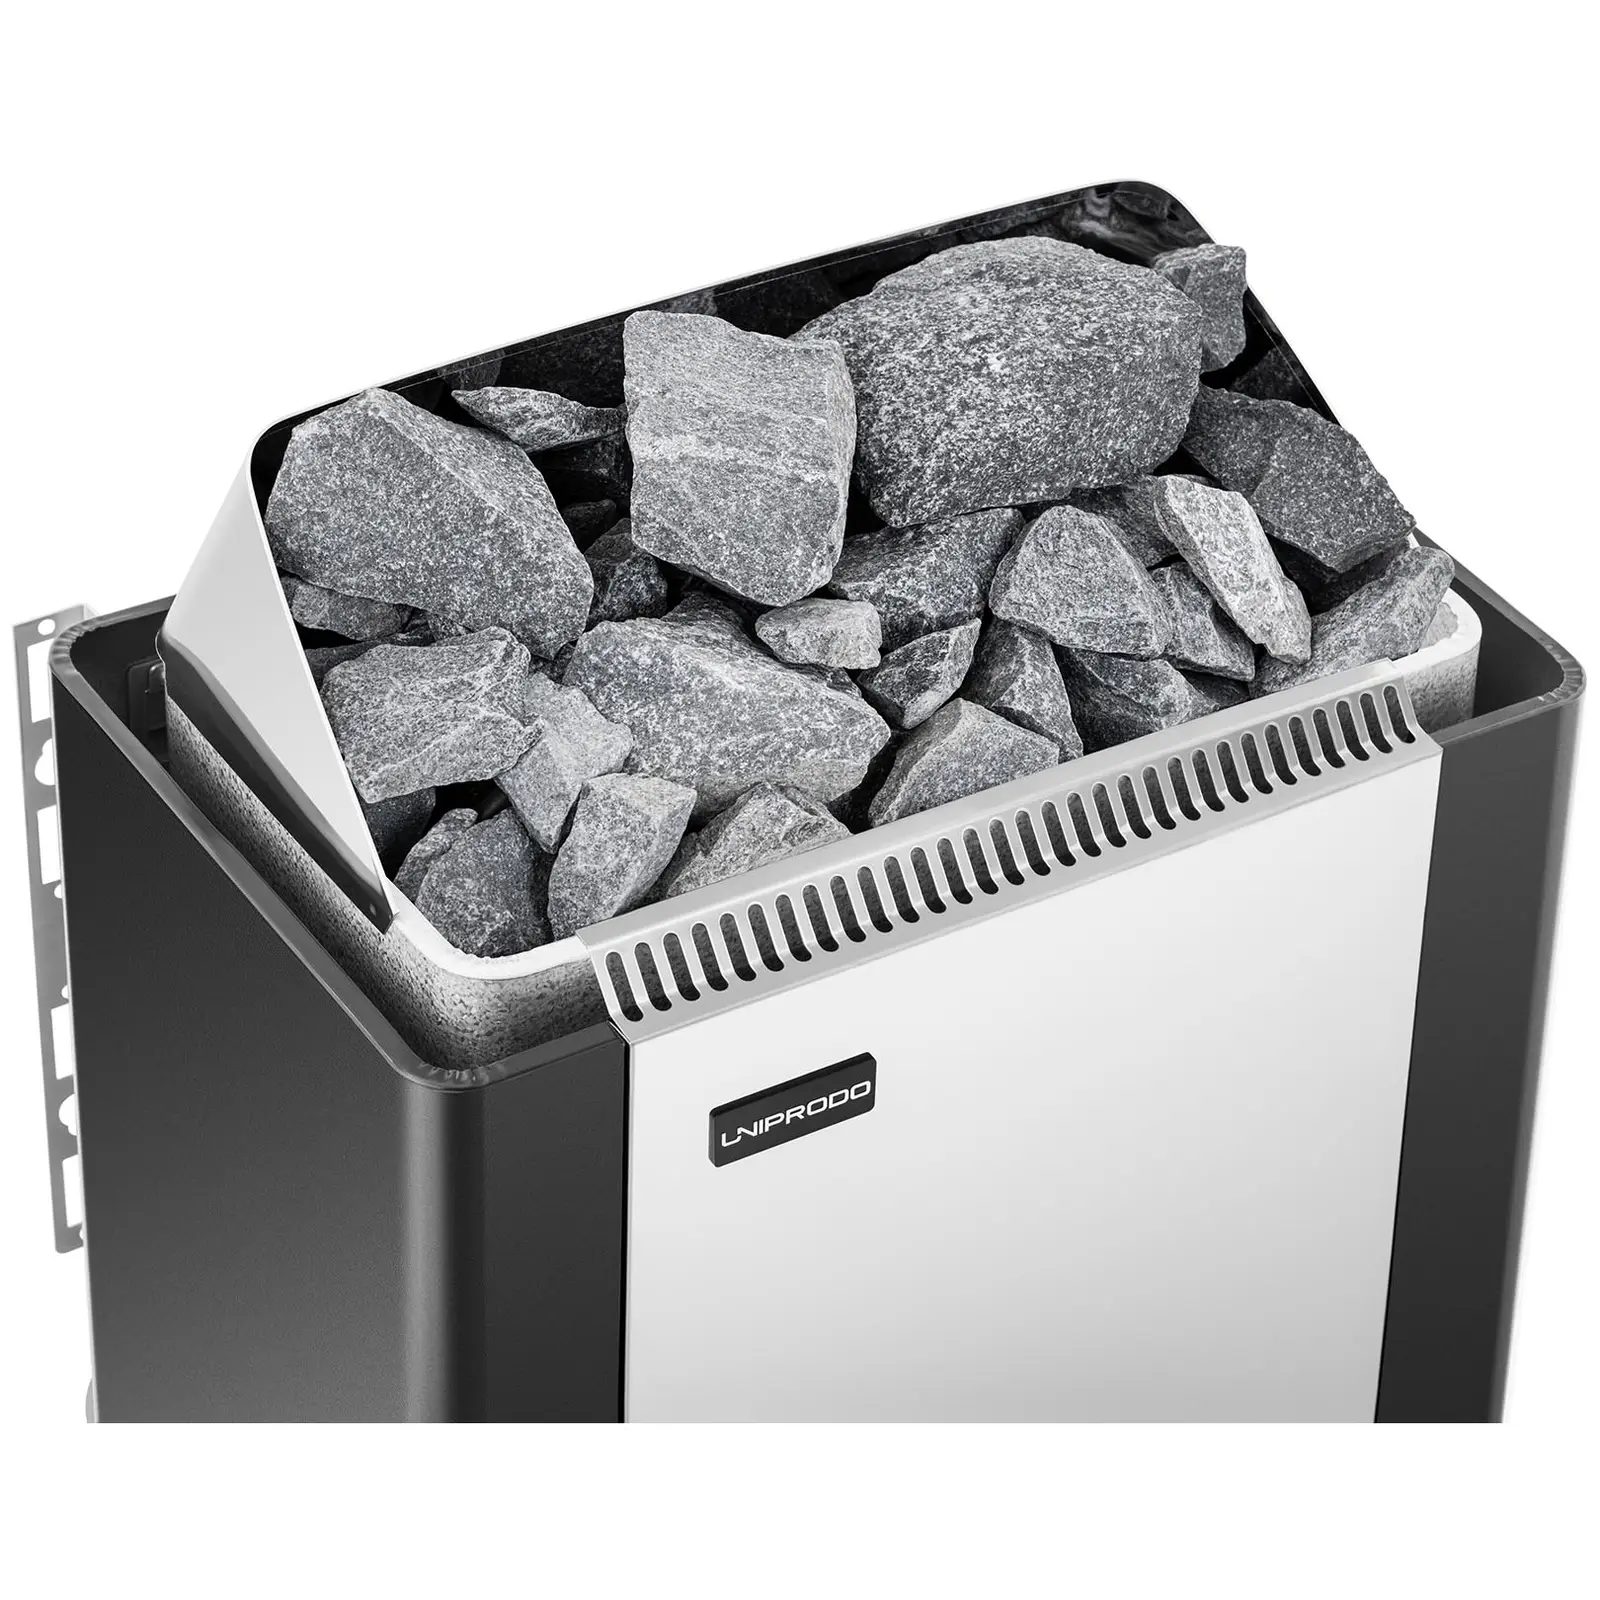 Saunová kamna s řídicí jednotkou pro sauny - 4,5 kW - od 30 do 110 °C - clona z ušlechtilé oceli